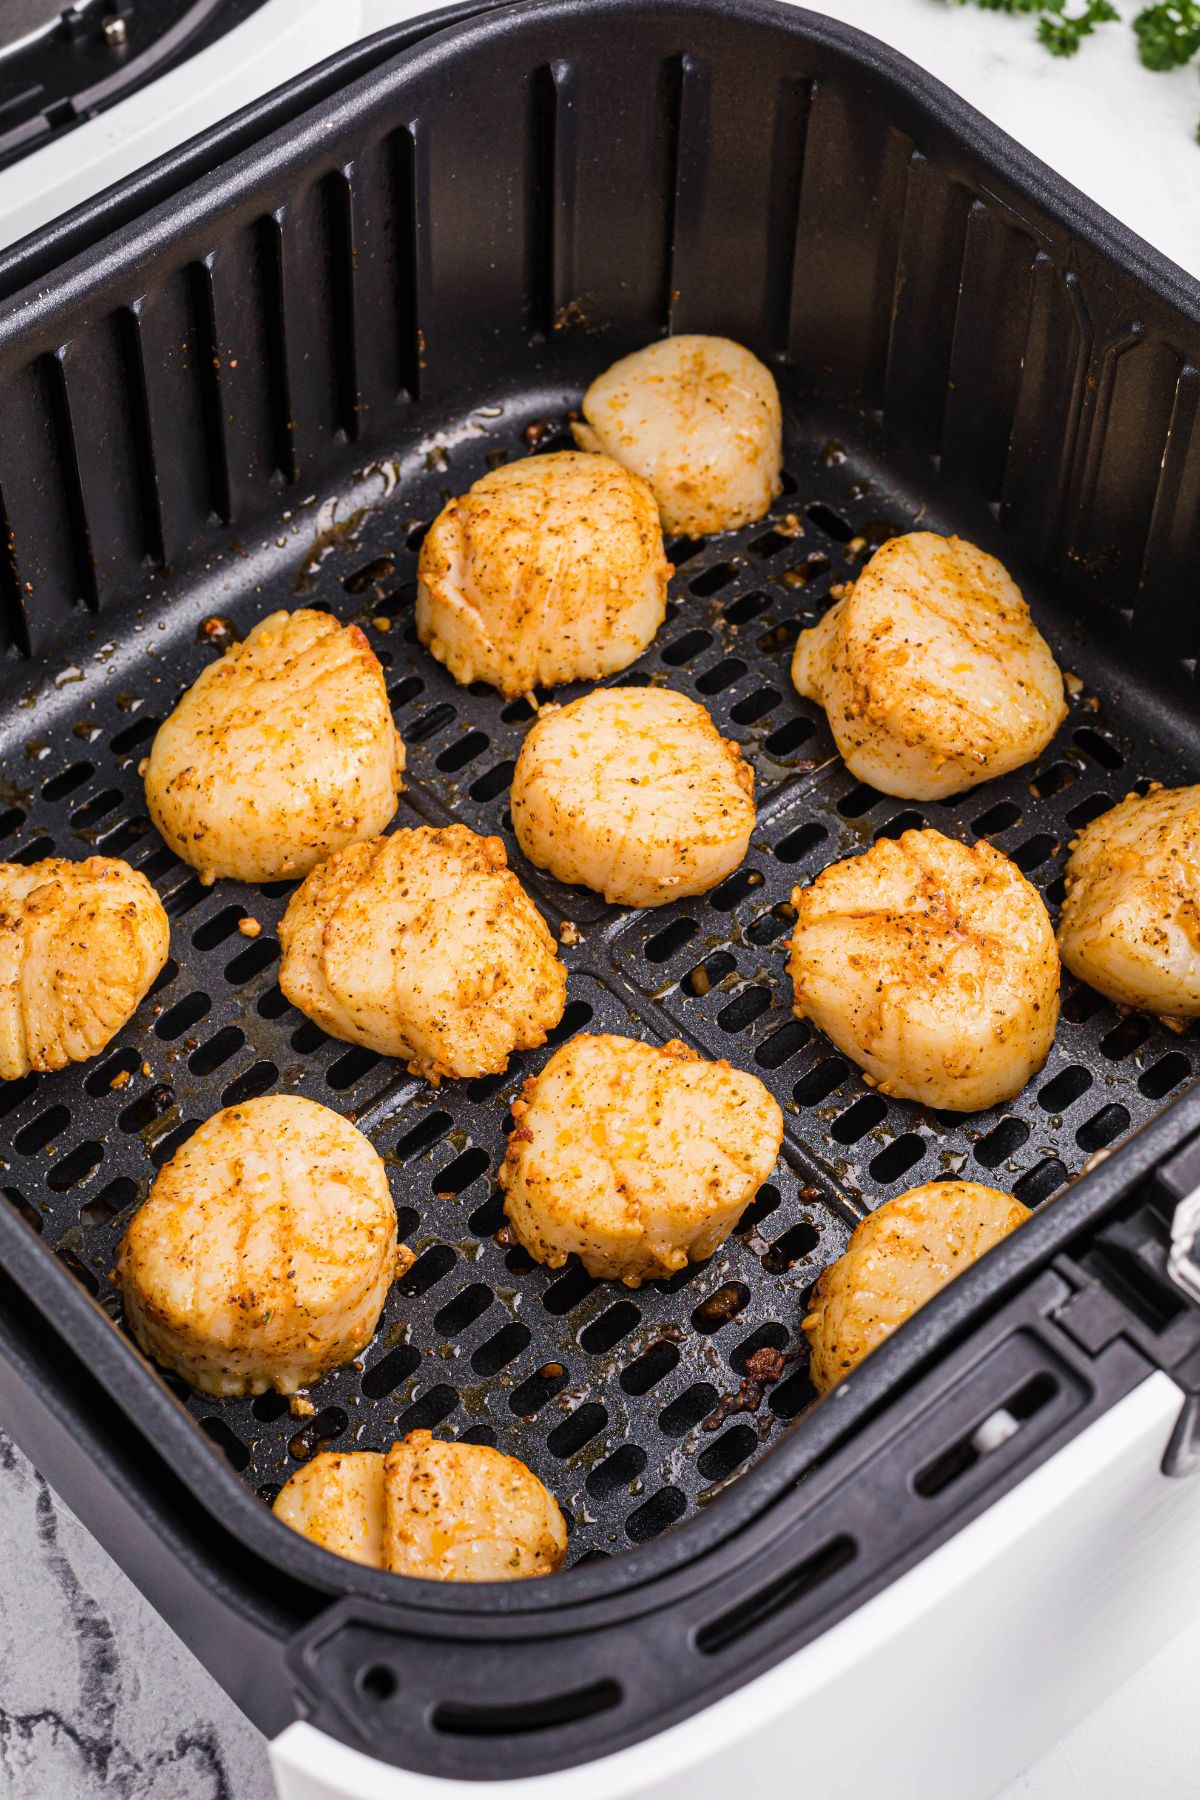 Juicy seasoned cooked sea scallops in an air fryer basket. 